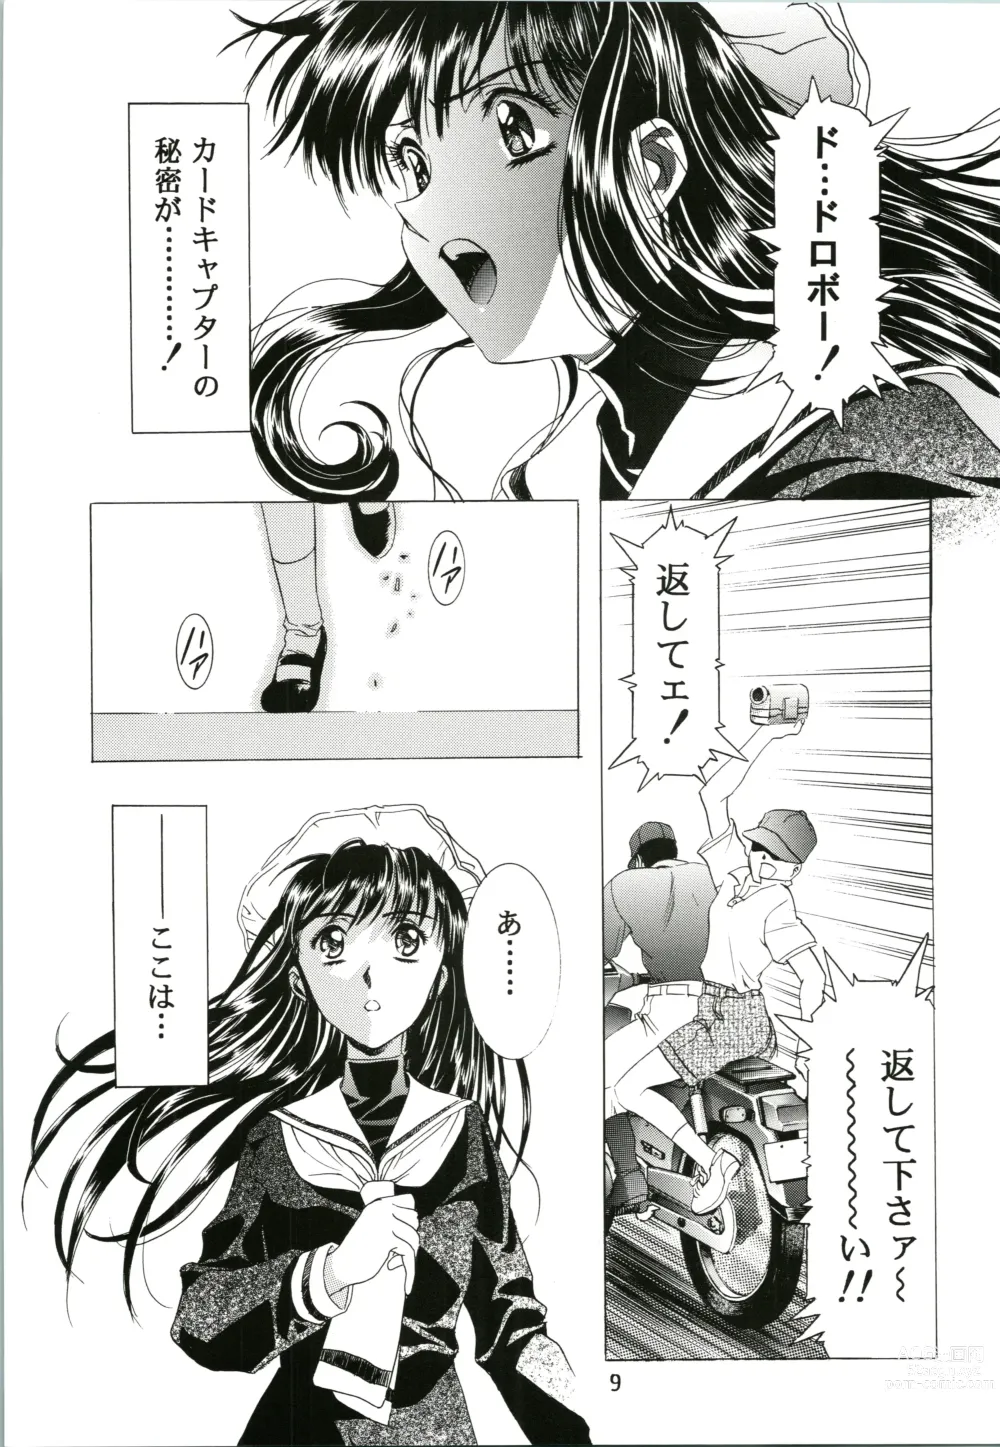 Page 9 of doujinshi Sakura Ame